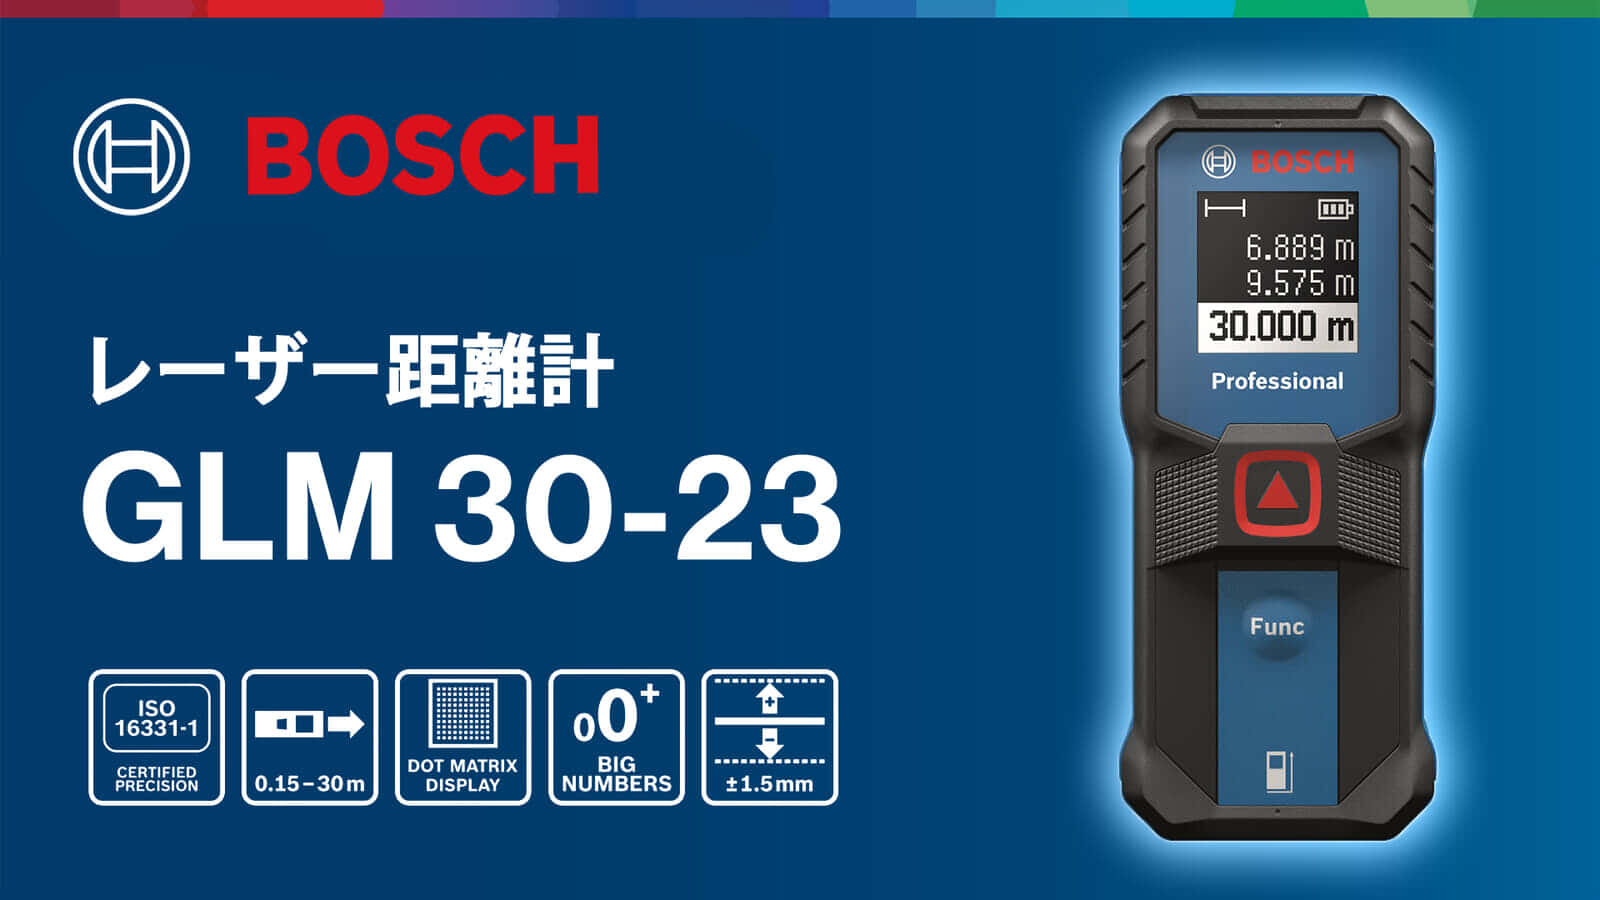 ボッシュ GLM 30-23 レーザー距離計を発売、使いやすさバツグンの軽量シンプルモデル